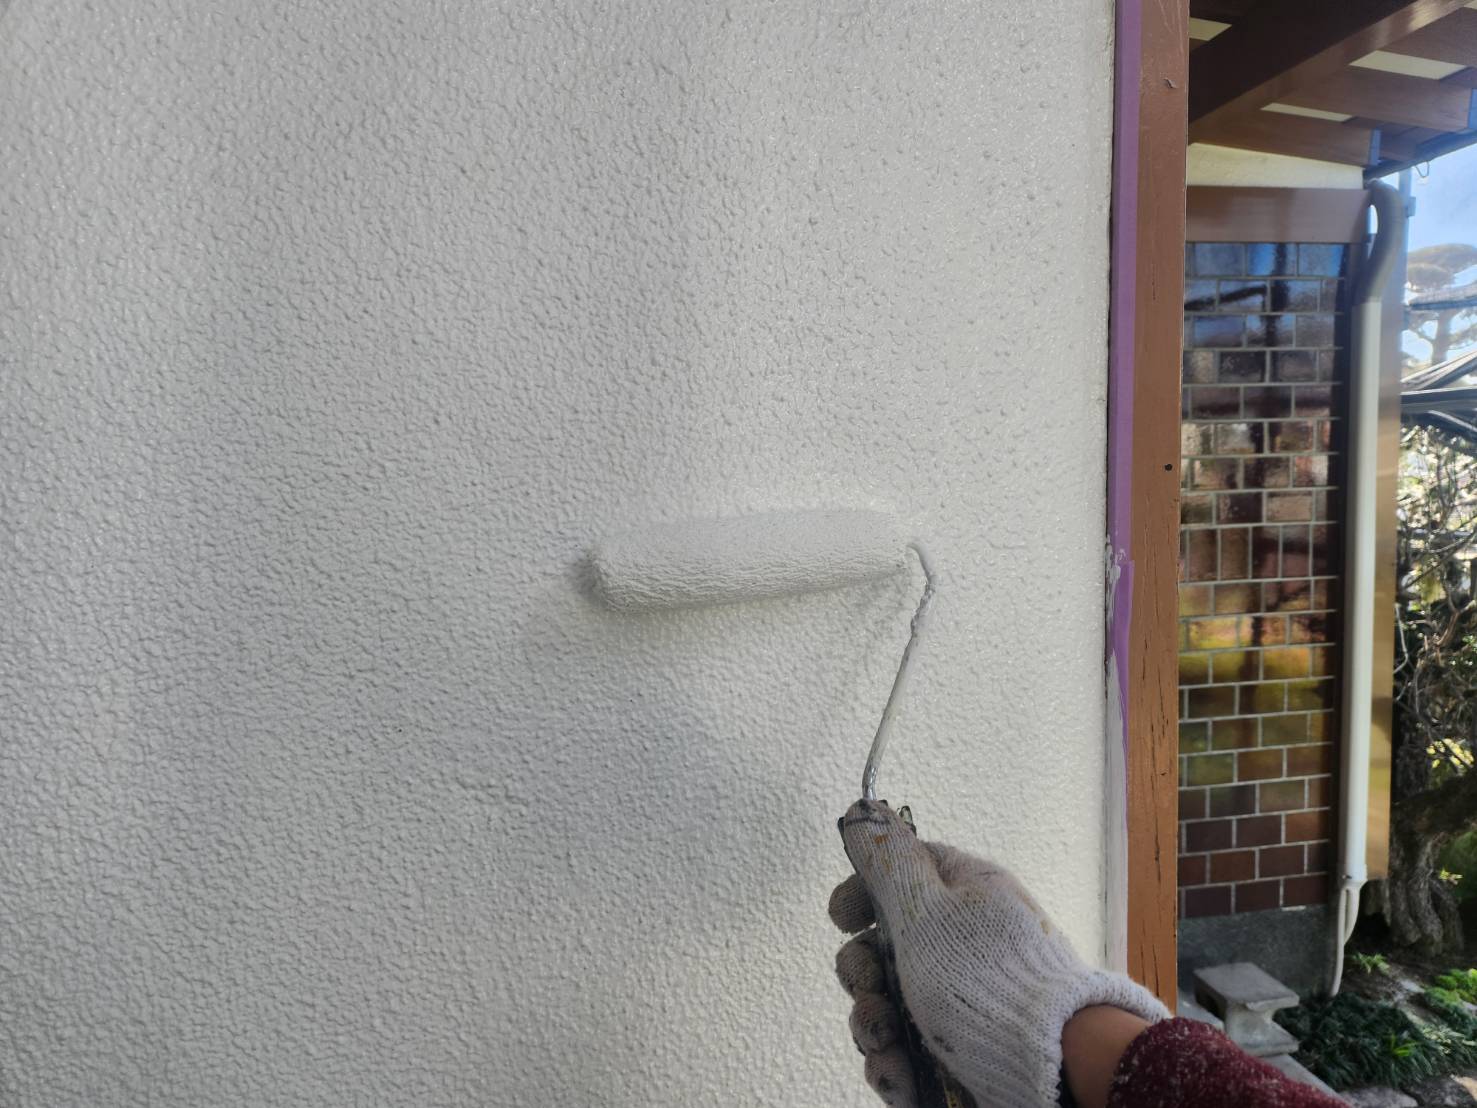 福岡県太宰府市高雄のM様邸で気になるチョーキングが発生している外壁をエシカルプロクールのフッ素塗料を使用して再塗装し、今後もさらに長持ちさせる施工を行っていきます。3/13着工です。【OB様より】